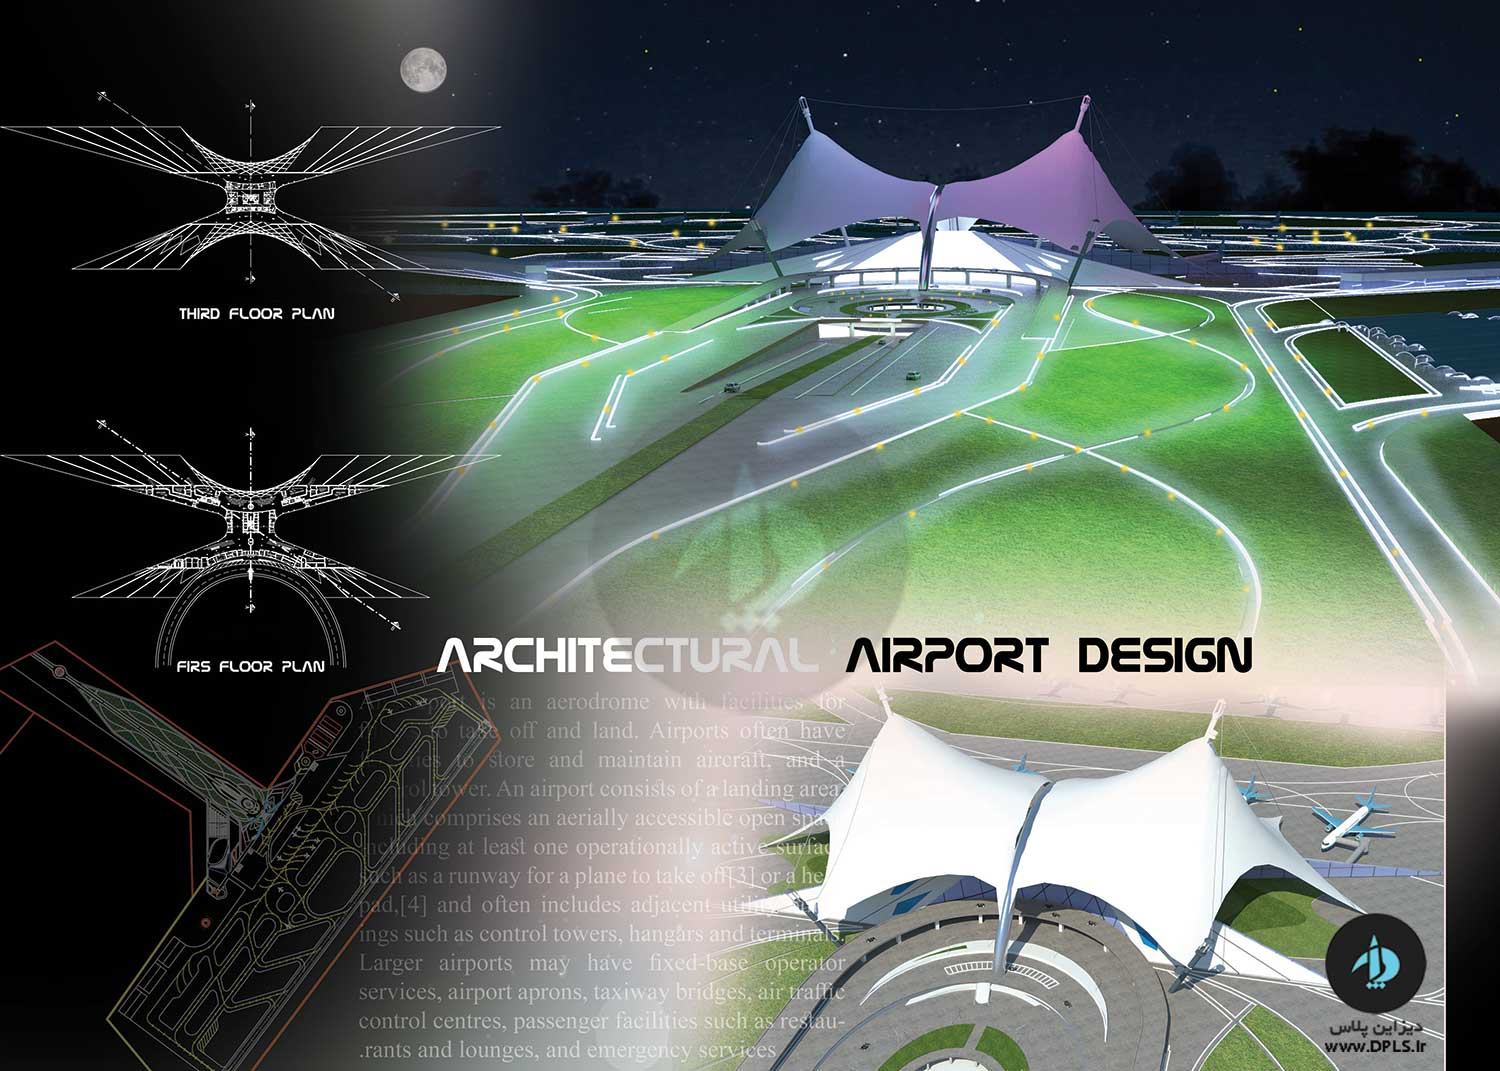 دانلود پروژه فرودگاه 2 - دانلود پروژه فرودگاه - به همراه نقشه ، سه بعدی و شیت بندی